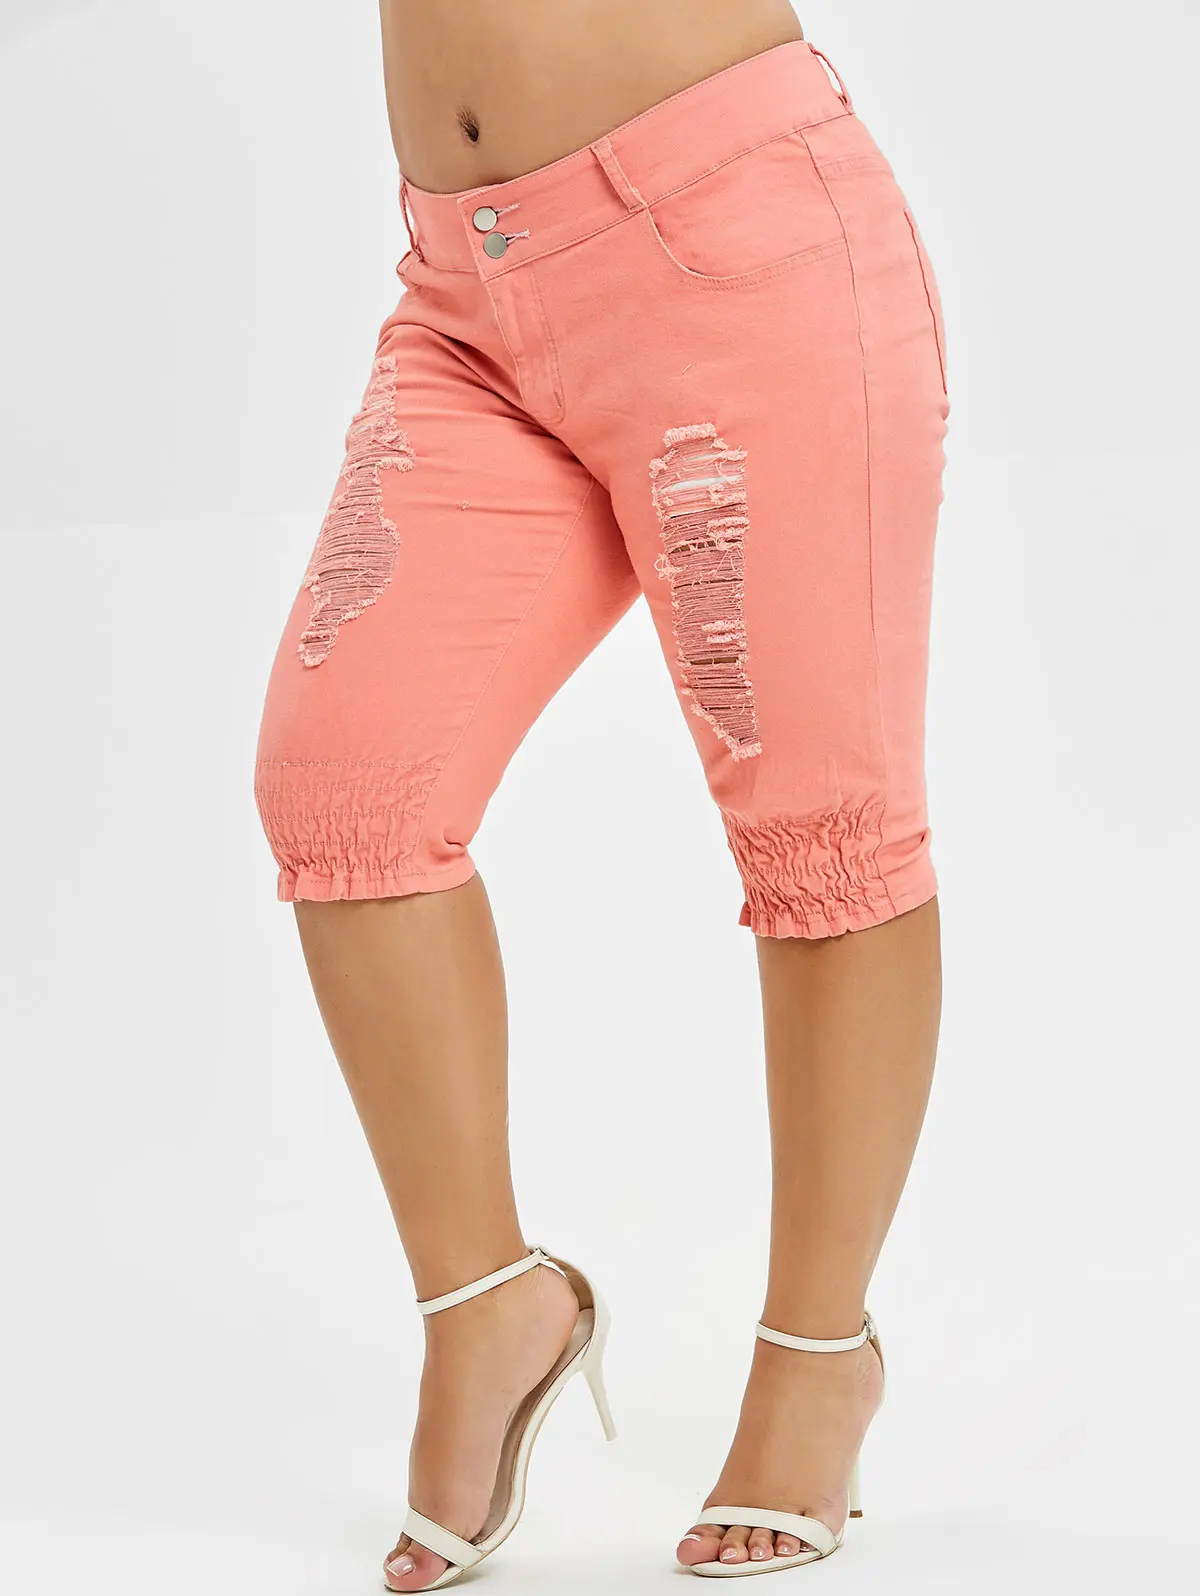 ROSEGAL размера плюс потертые джинсы длиной до колена на молнии, одноцветные прямые брюки со средней талией, обтягивающие джинсы для женщин, летняя нижняя часть